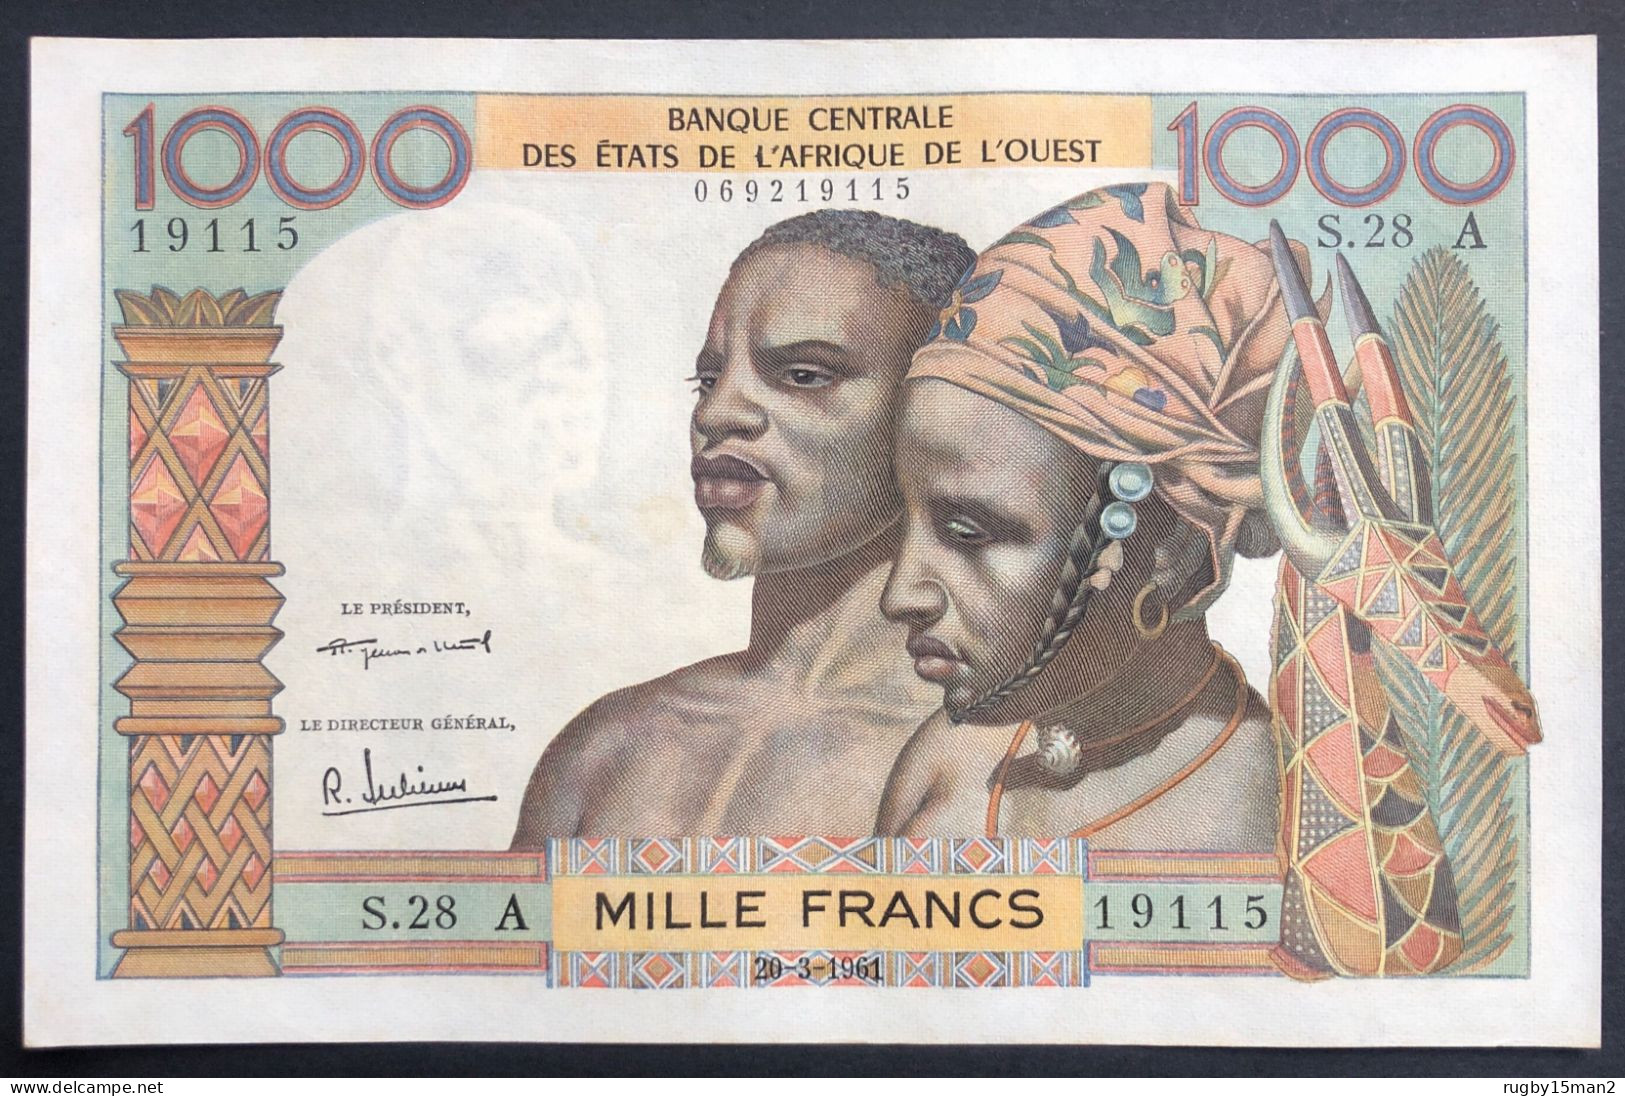 N°52 BILLET DE BANQUE 1000 FRANCS CÔTE D'IVOIRE 20/3/1961 SUP/SUP+/XF+ - Elfenbeinküste (Côte D'Ivoire)